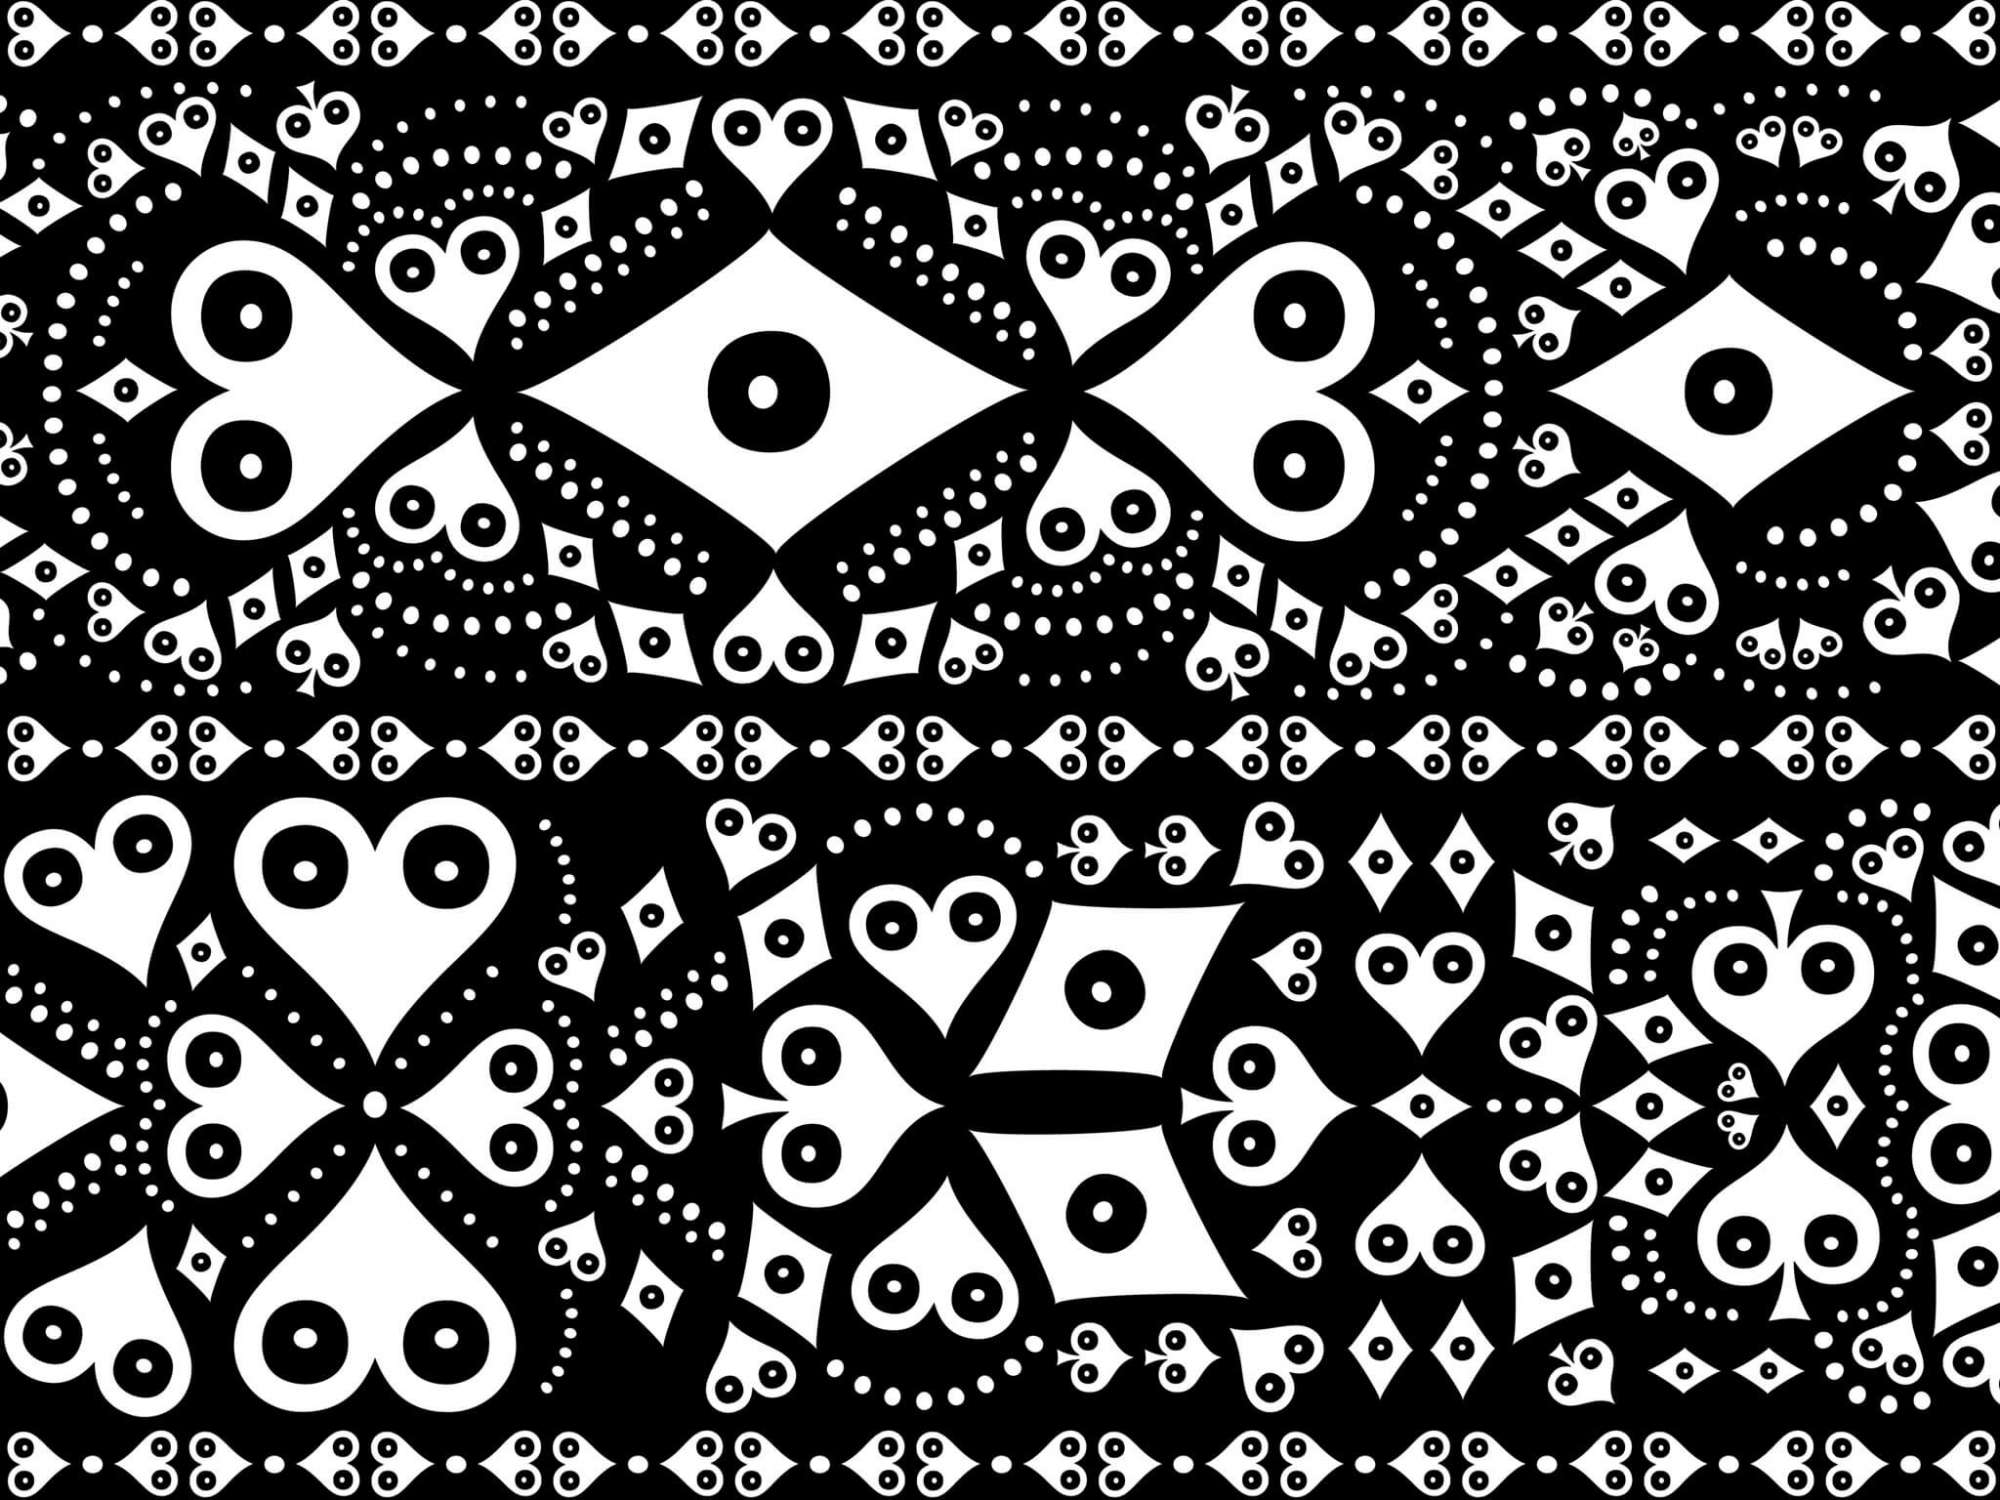 Le papier peint noir et blanc Pokerface Mariachi, habillent vos murs pour une décoration mexicaine baroque, dessiné par ichetkar